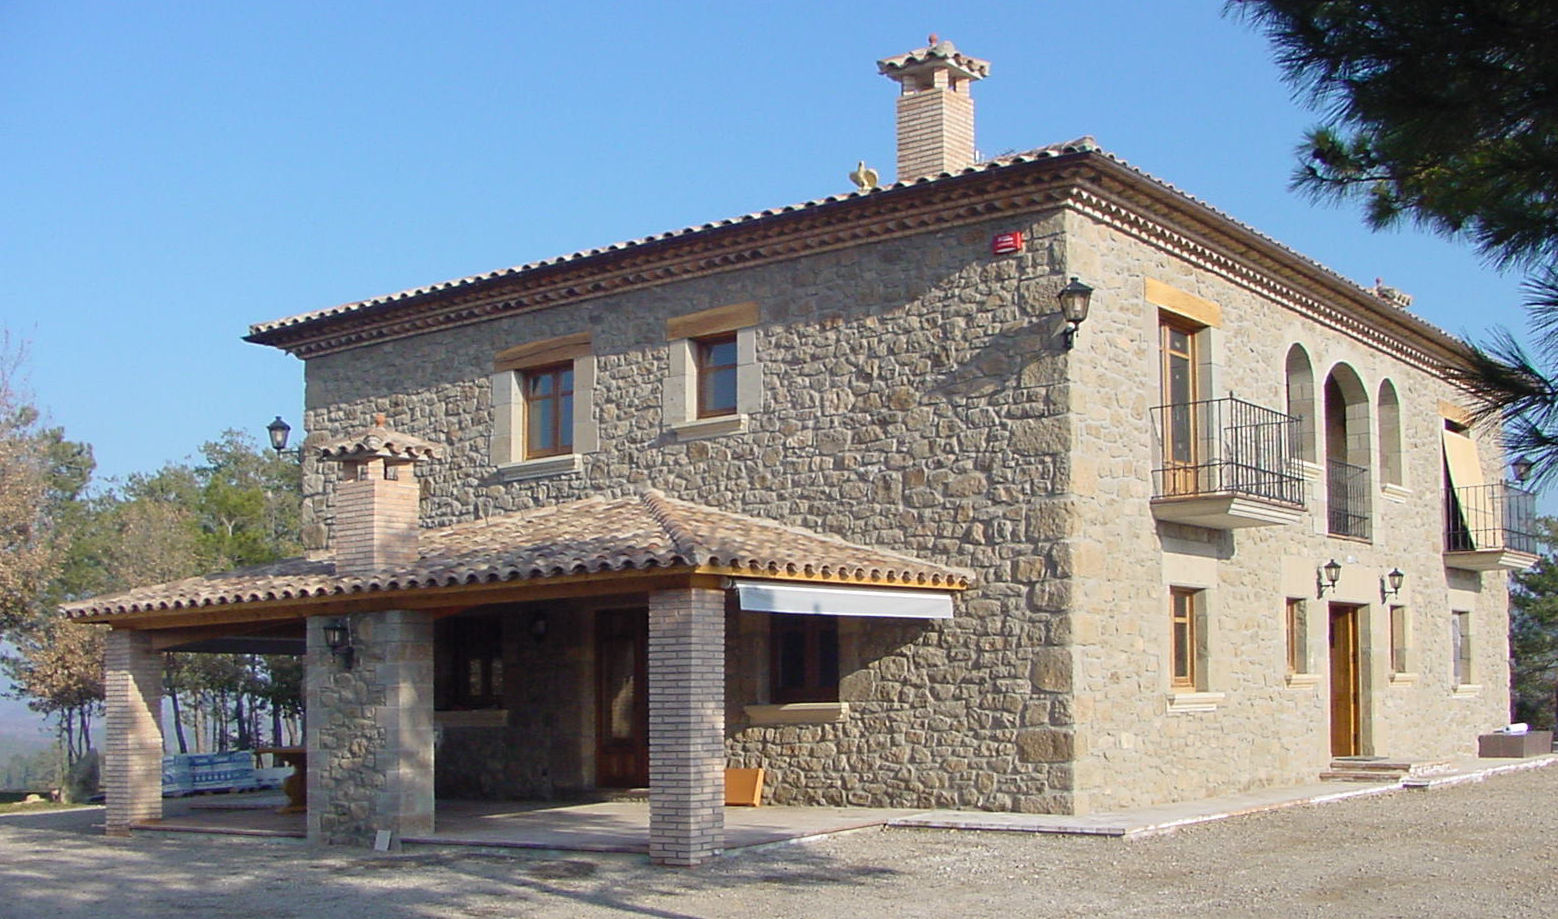 Casa de turismo rural en la Torre d'Oristà (Barcelona), ALENTORN i ALENTORN ARQUITECTES, SLP ALENTORN i ALENTORN ARQUITECTES, SLP Casas rústicas Pedra